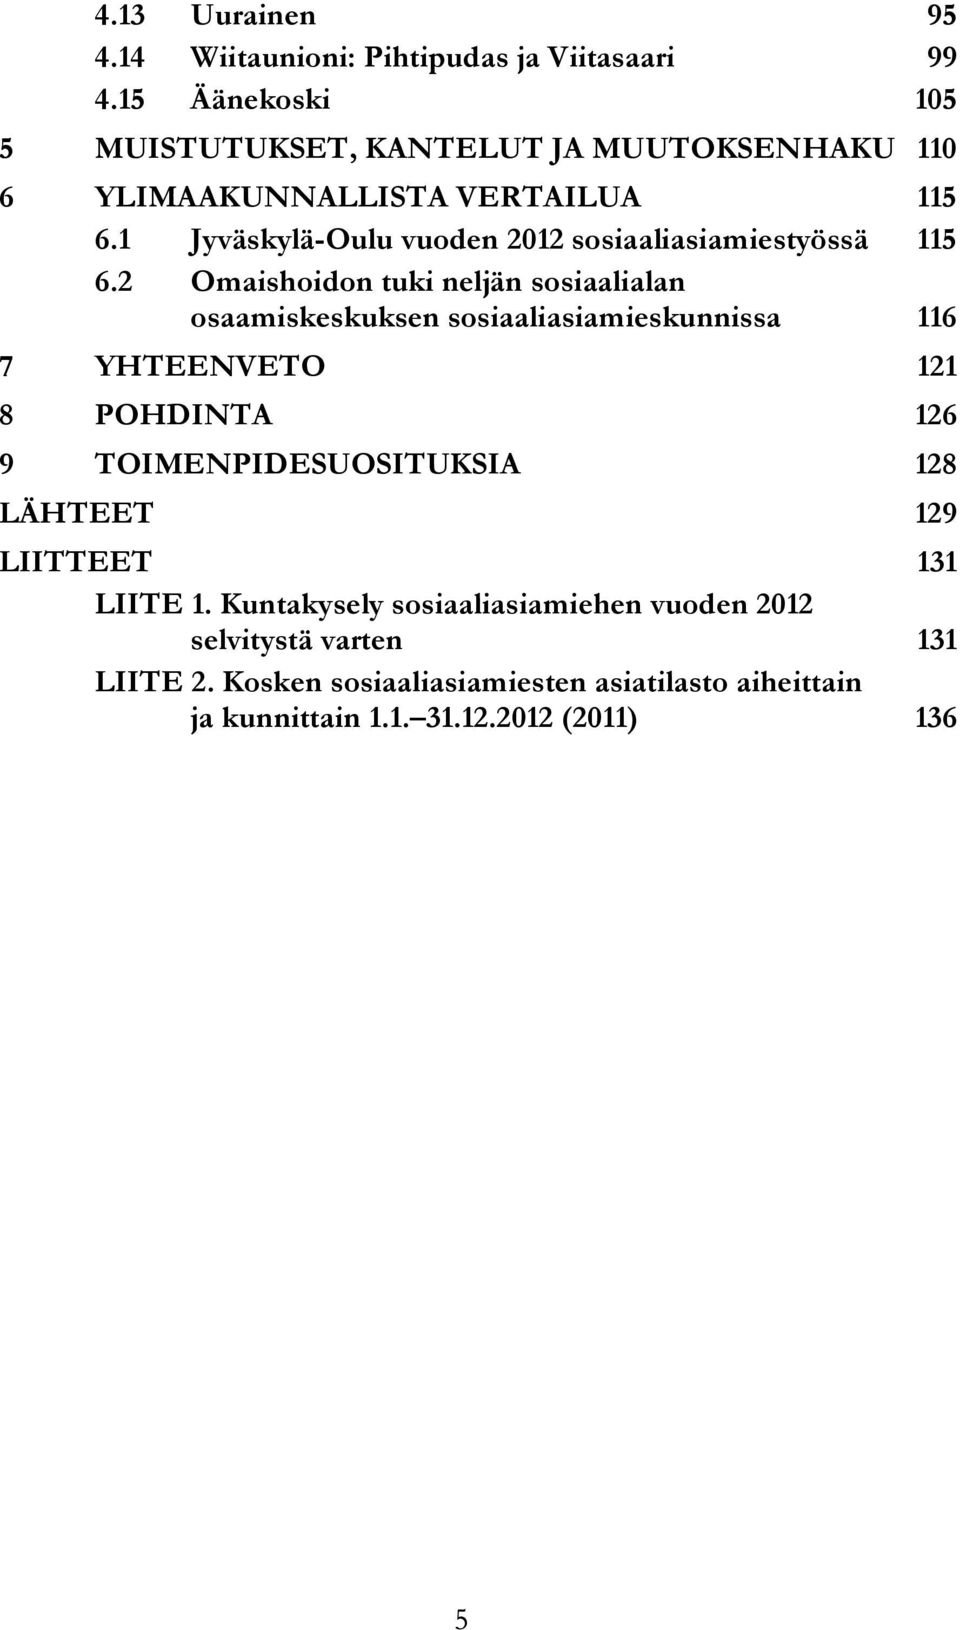 1 Jyväskylä-Oulu vuoden 2012 sosiaaliasiamiestyössä 115 6.